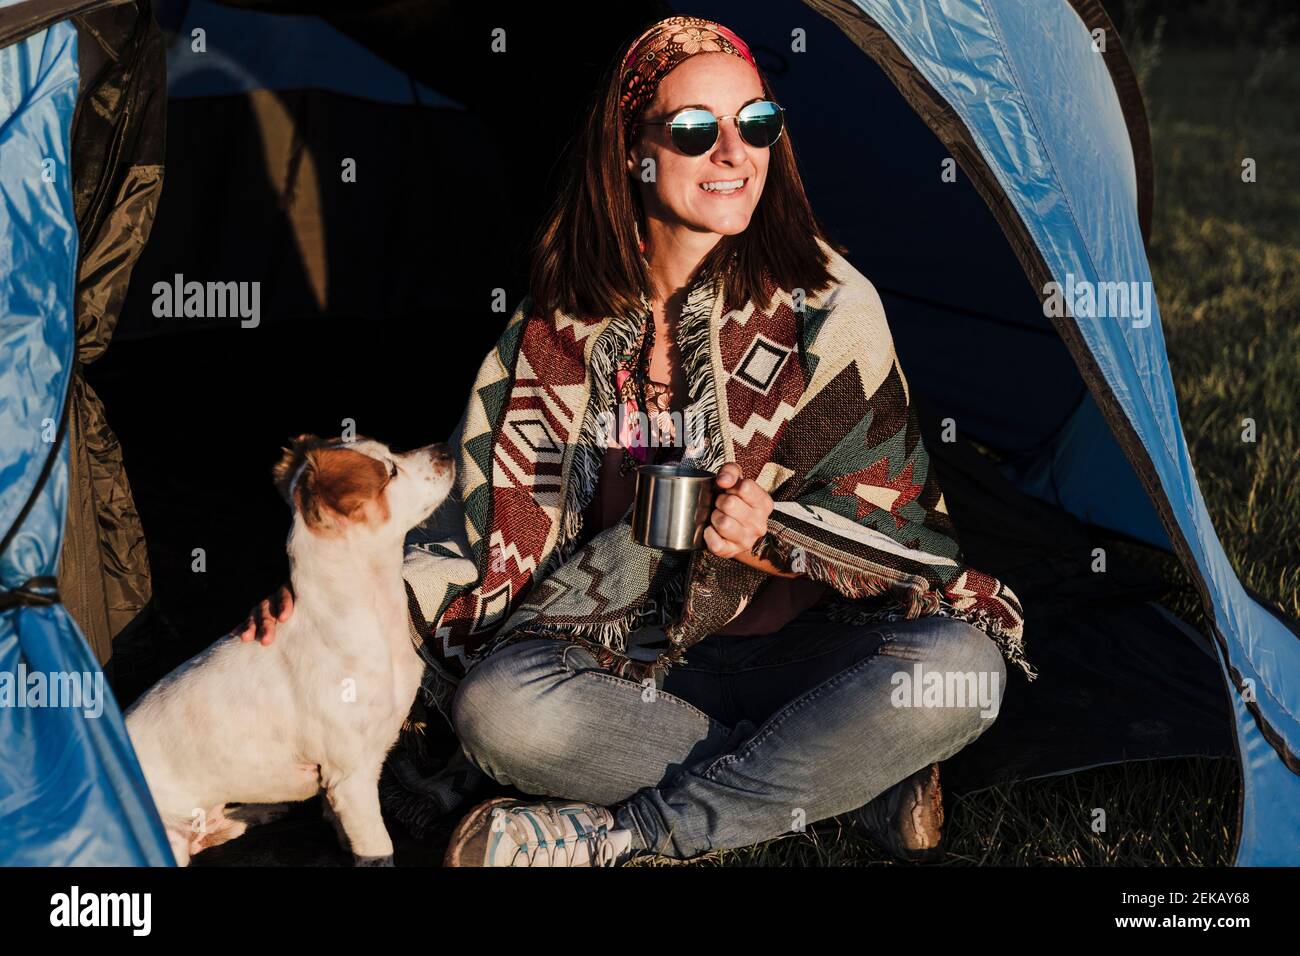 Glückliche Frau trägt eine Sonnenbrille und hält den Becher, während sie mit dem Hund sitzt Im Zelt Stockfoto